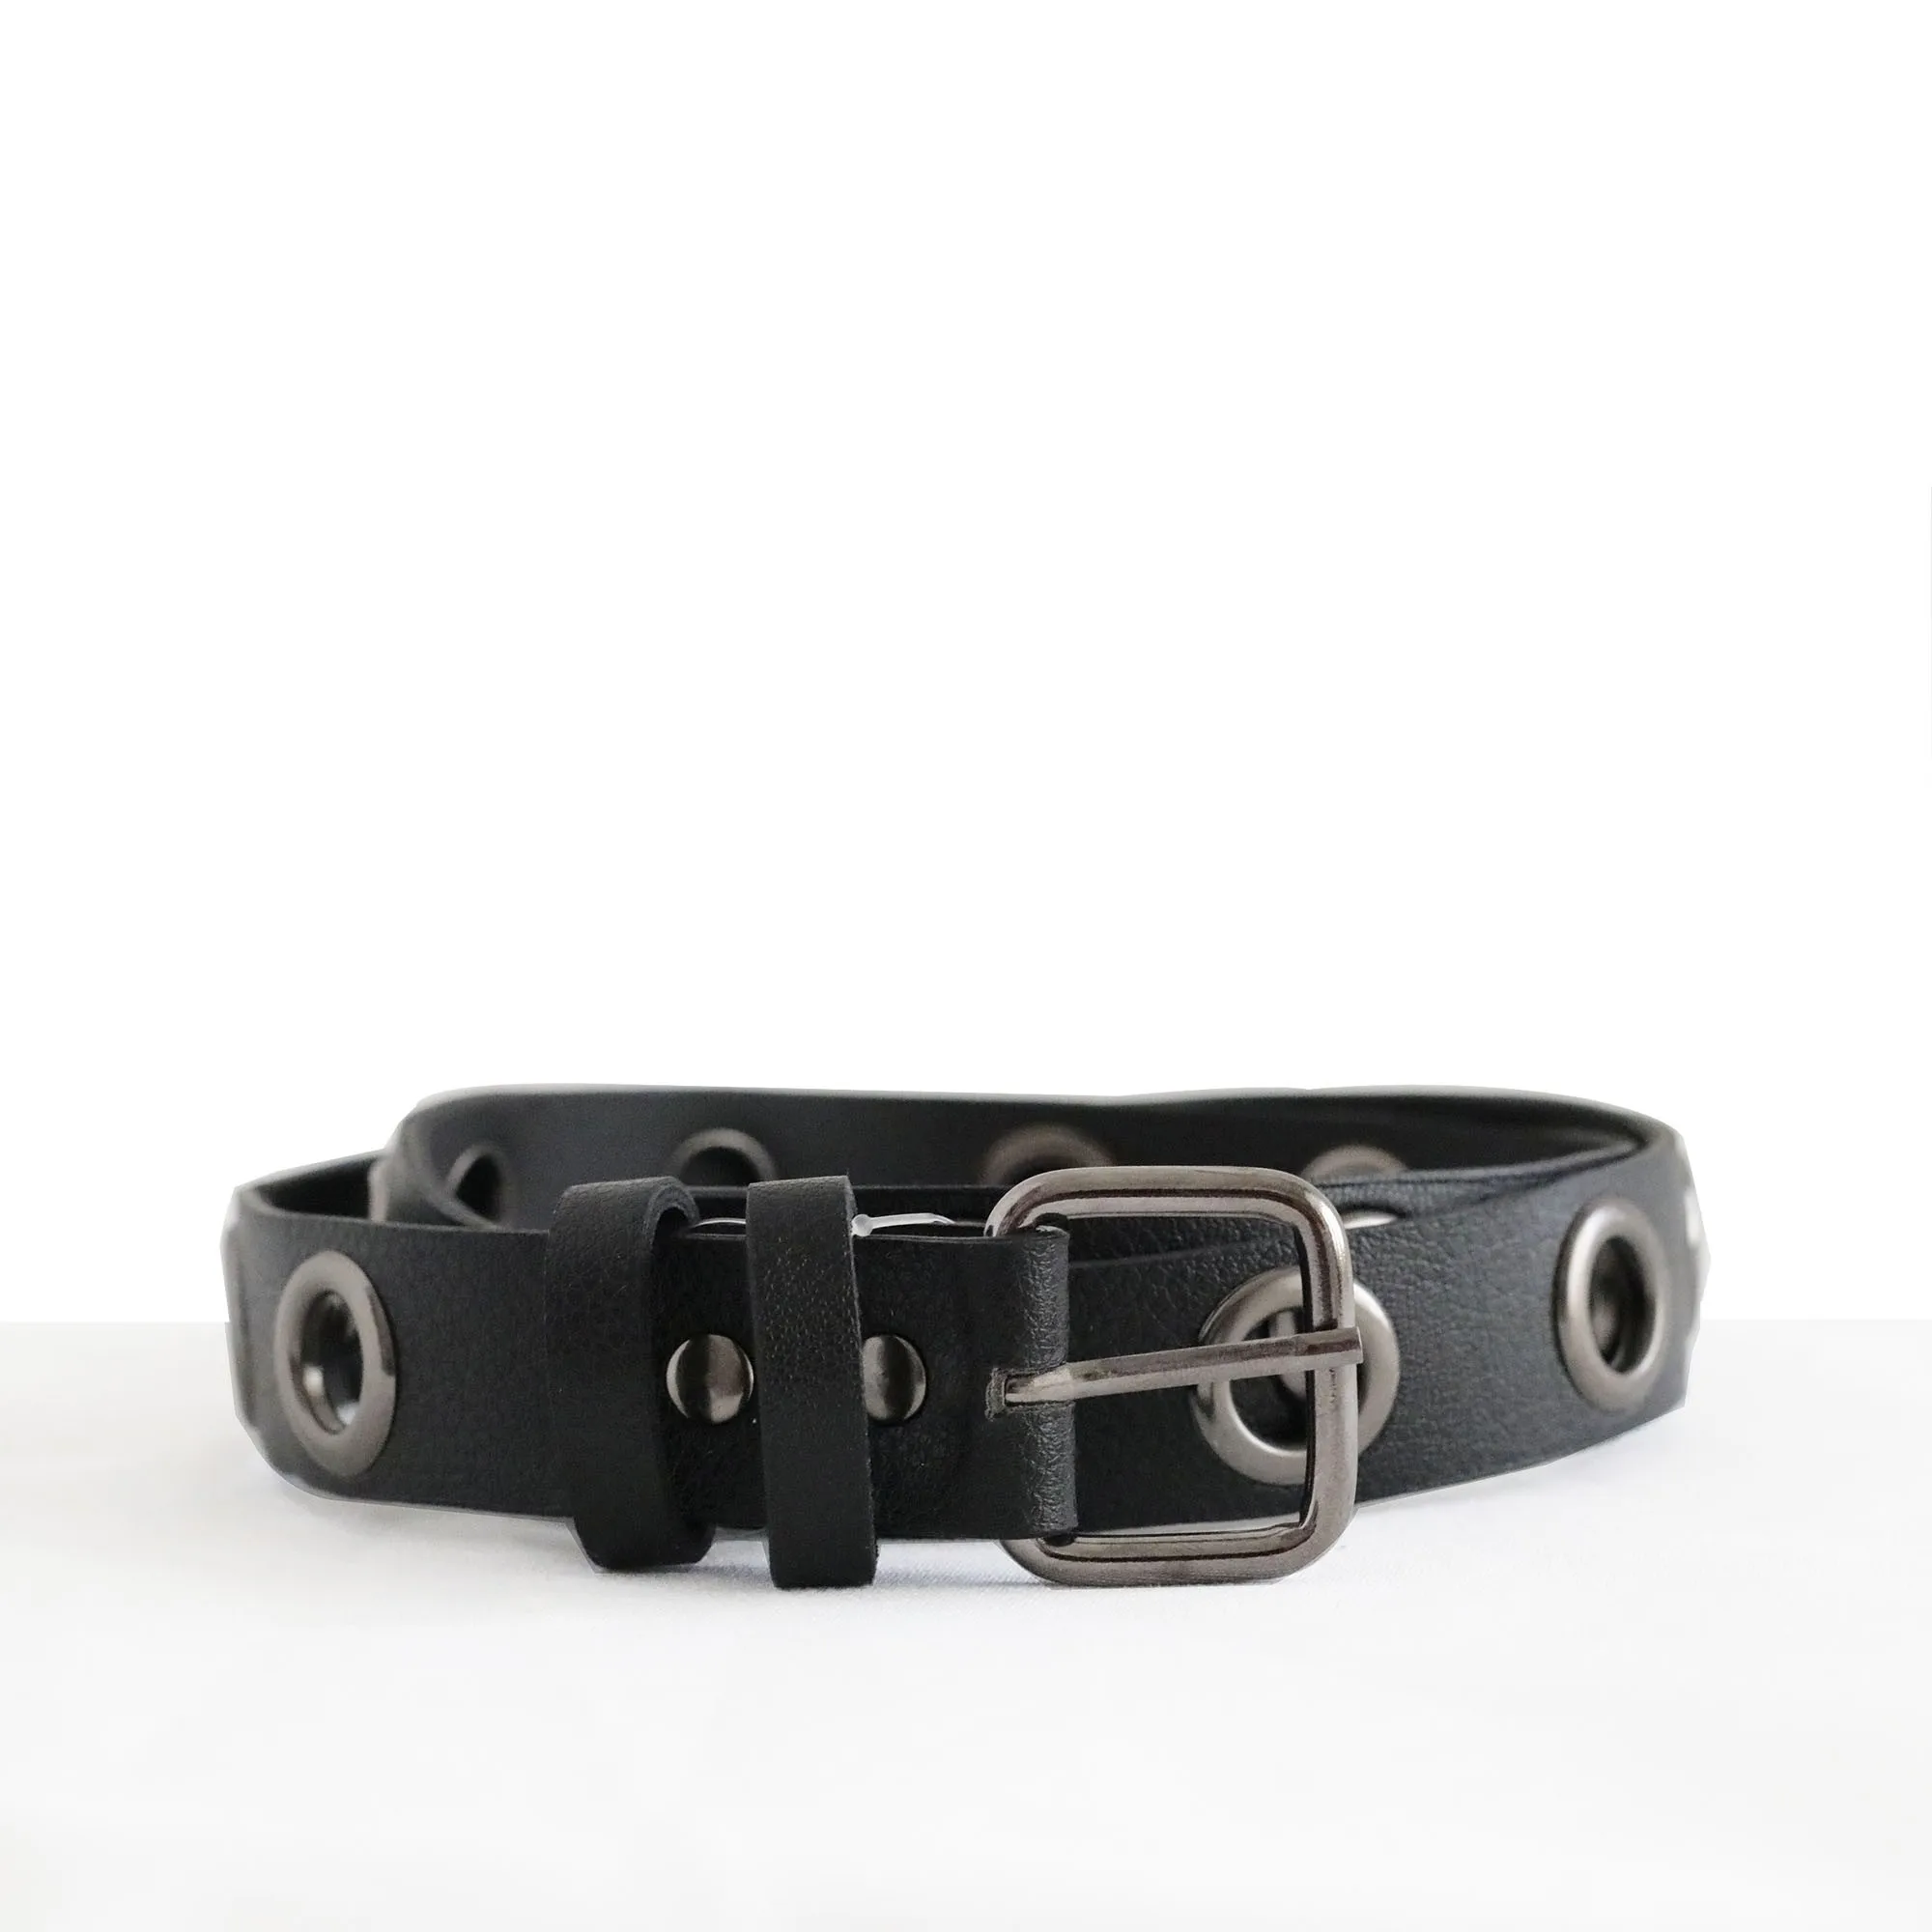 women belt fancy belt design belt leather belt Black Color Big Studded Street Style Belt